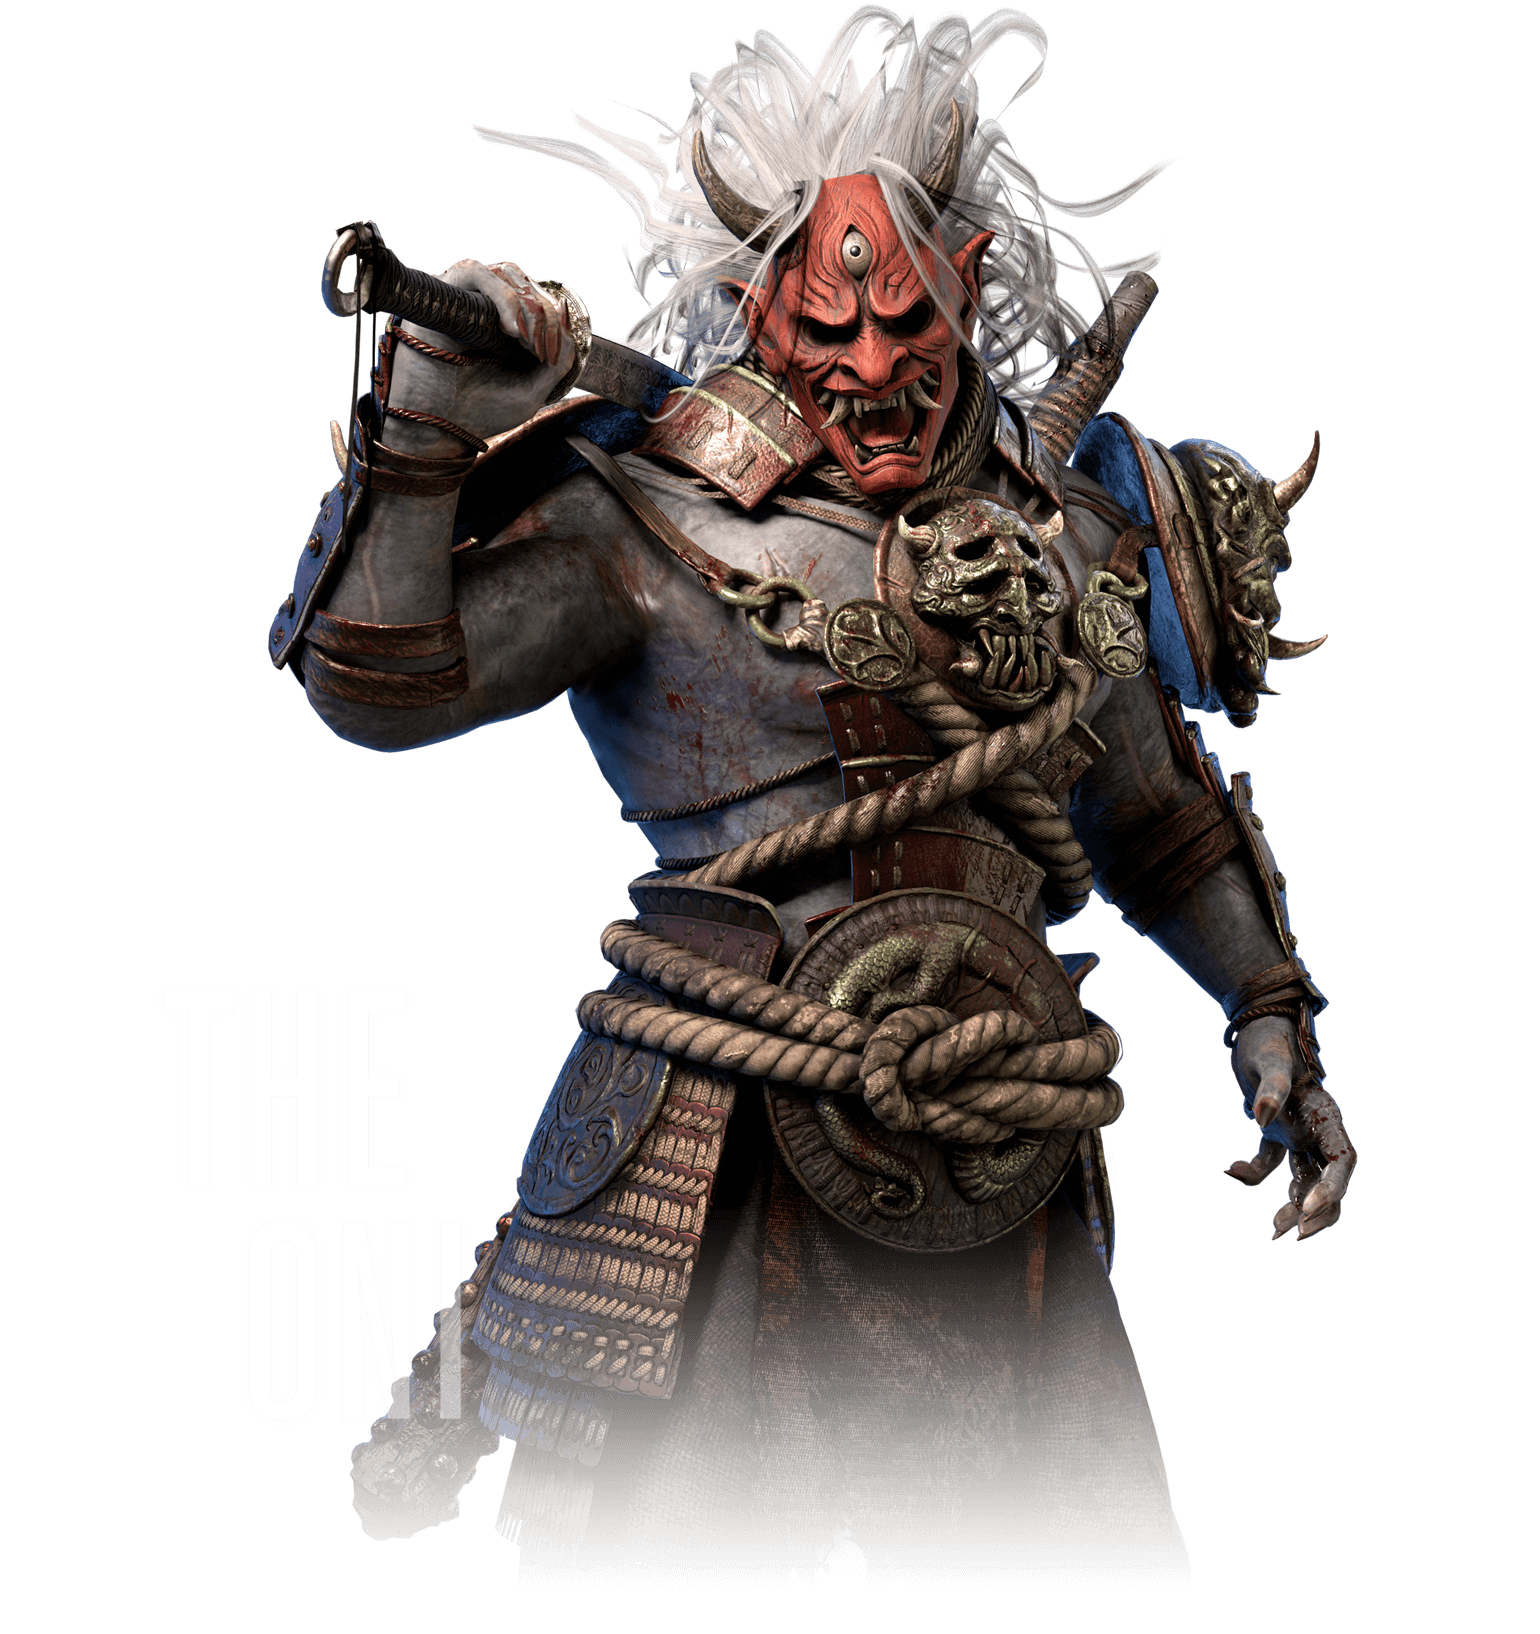 The Oni Dead By Daylight 攻略 Wiki アットウィキ